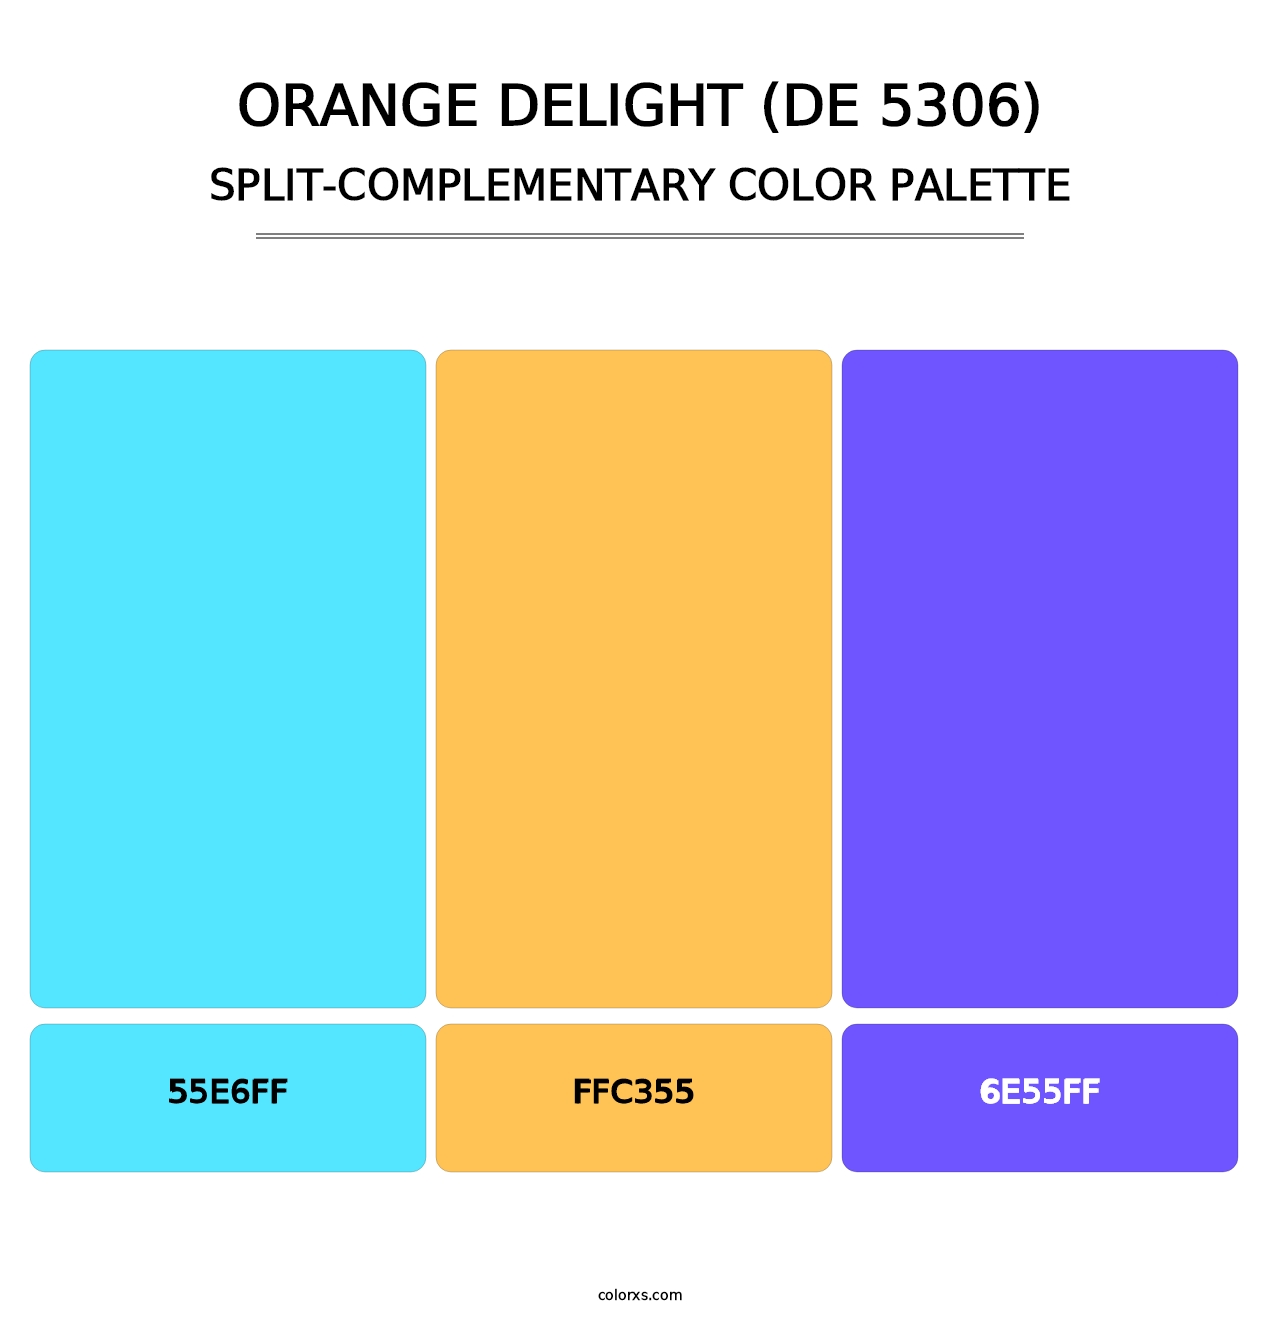 Orange Delight (DE 5306) - Split-Complementary Color Palette